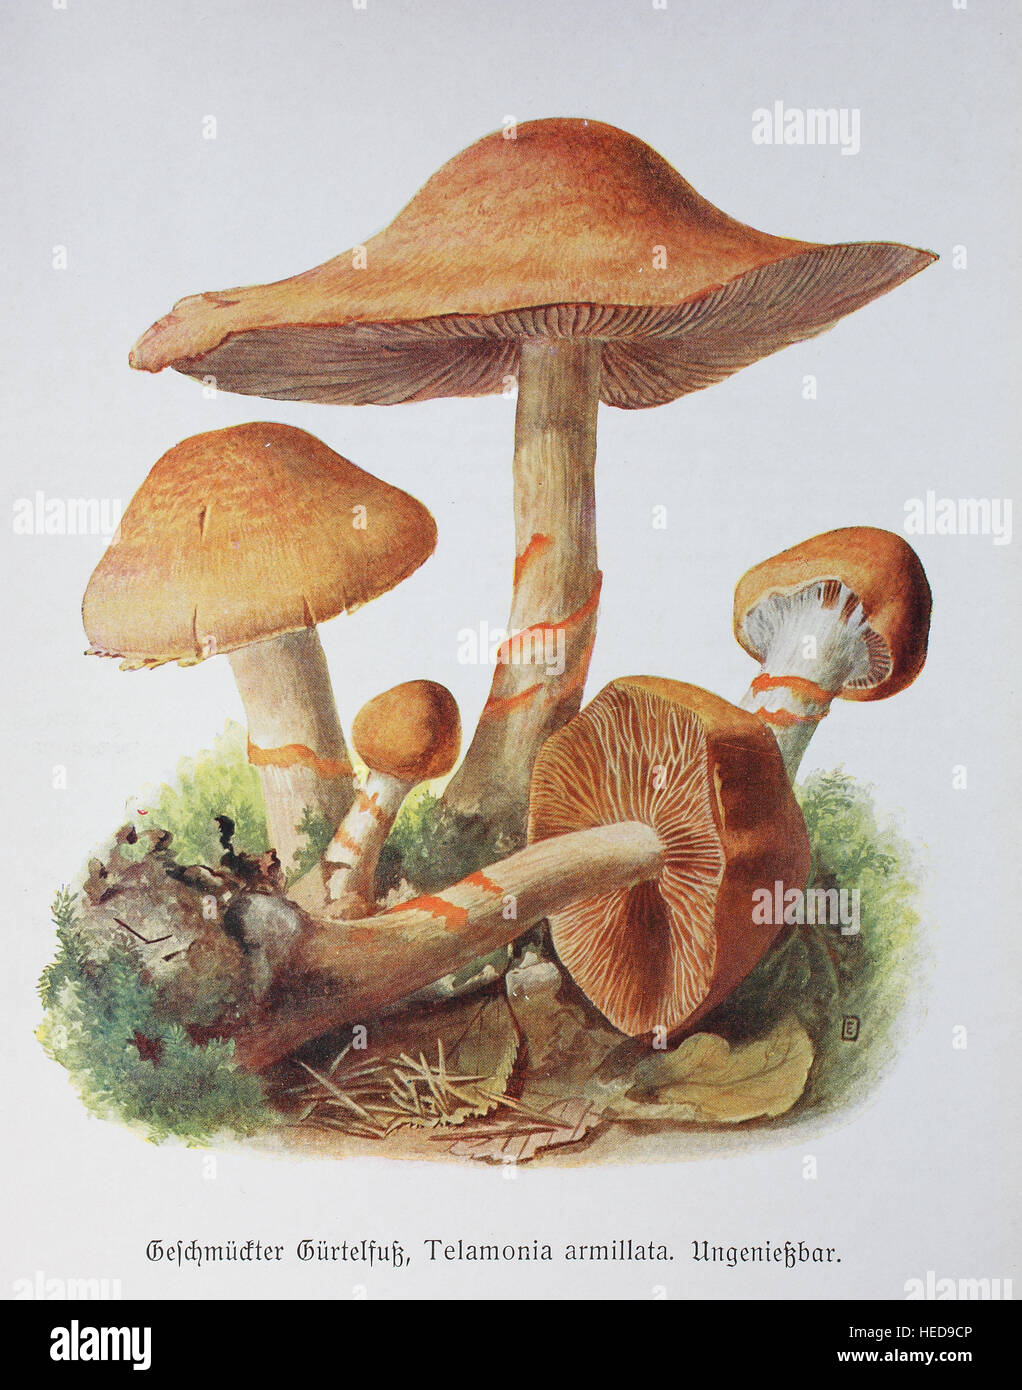 Geschmueckter Guertelfuss, Telamonia armillata, Cortinarius armillatus, digitale Reproduktion einer Illustration von Emil Doerstling (1859-1940) Stock Photo